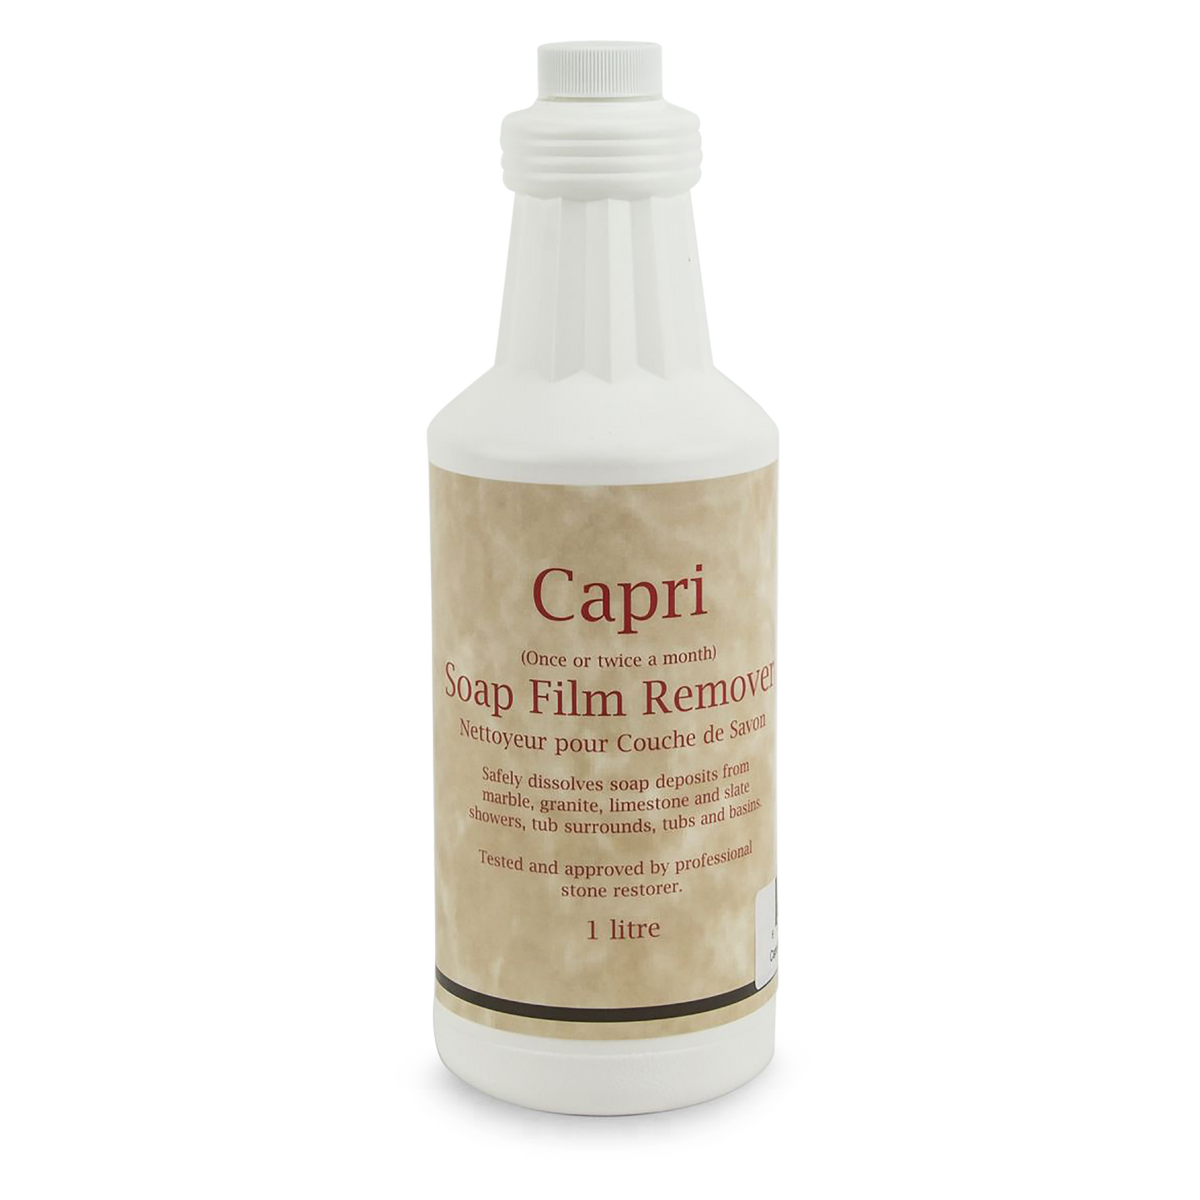 Capri Soap Film Remover